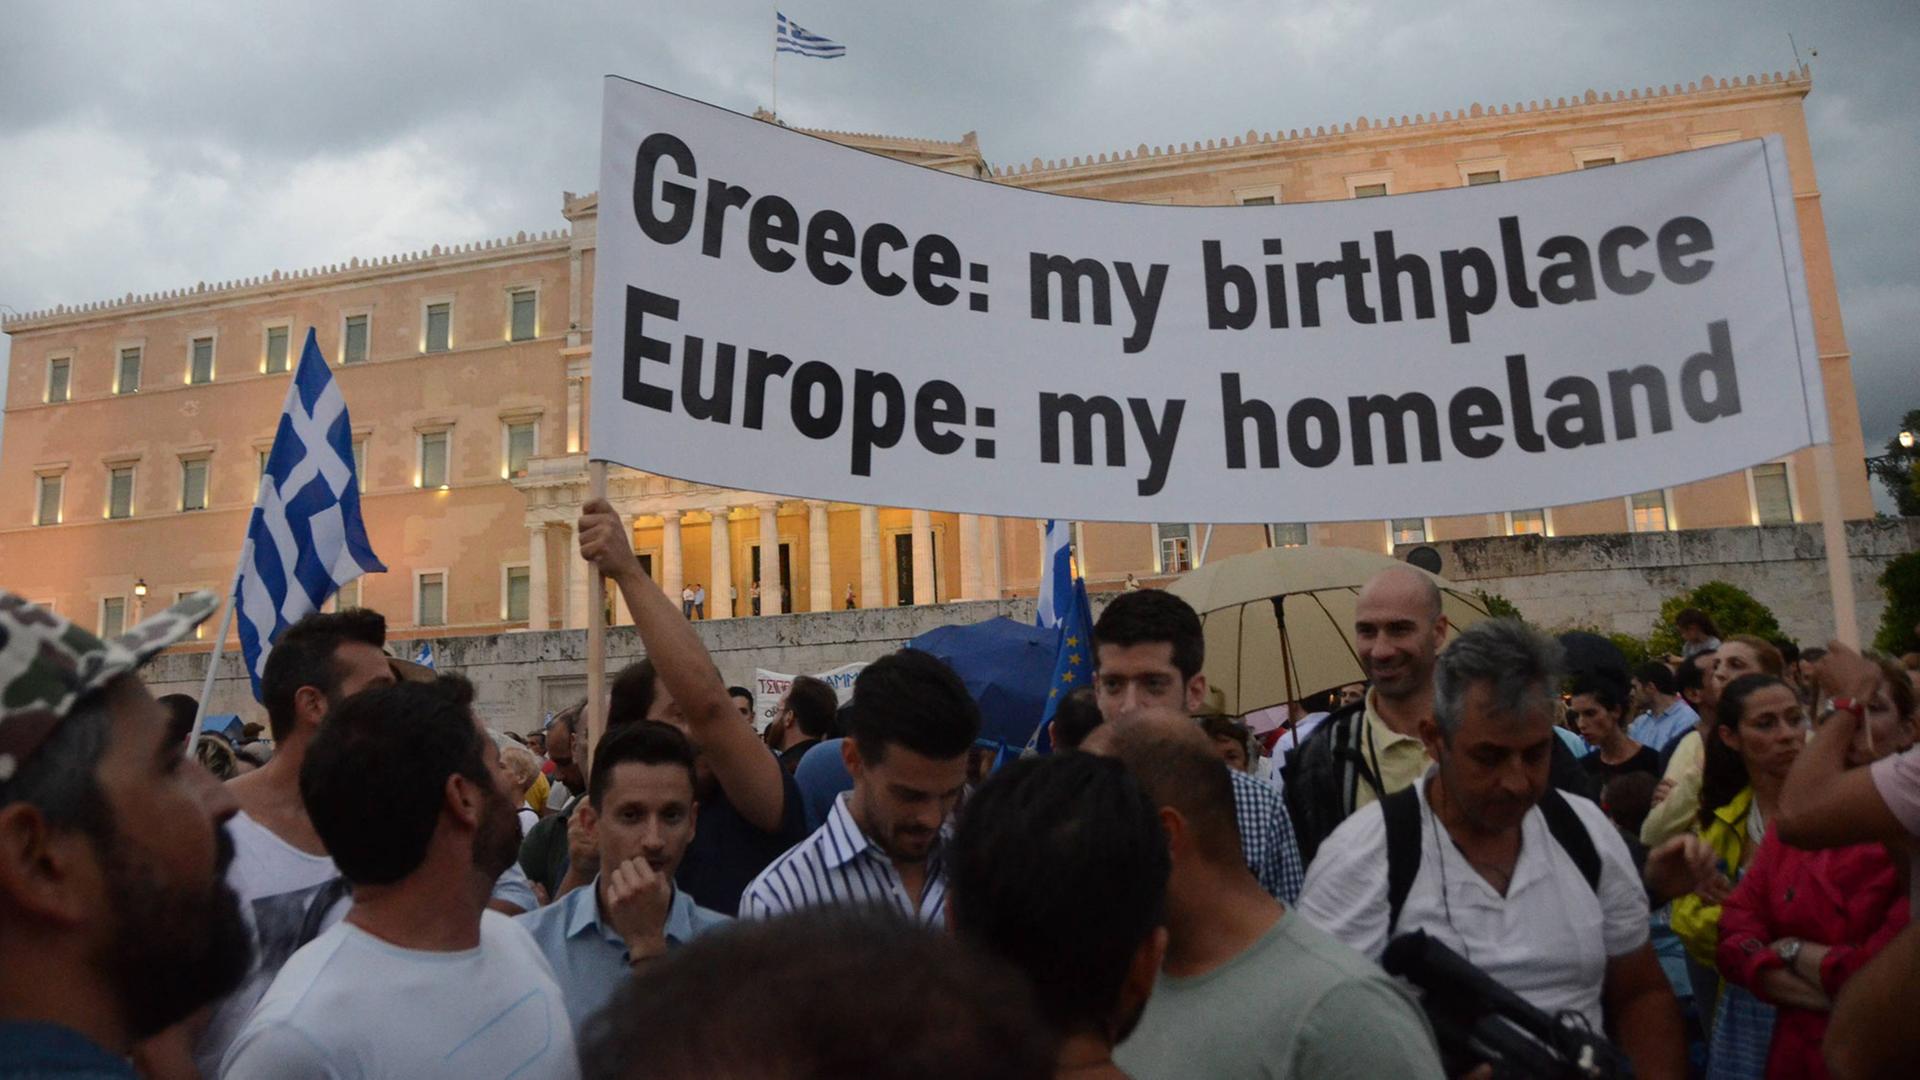 Am 30.6. gab es Demonstrationen in Athen gegen die Politik der europäischen Regierung